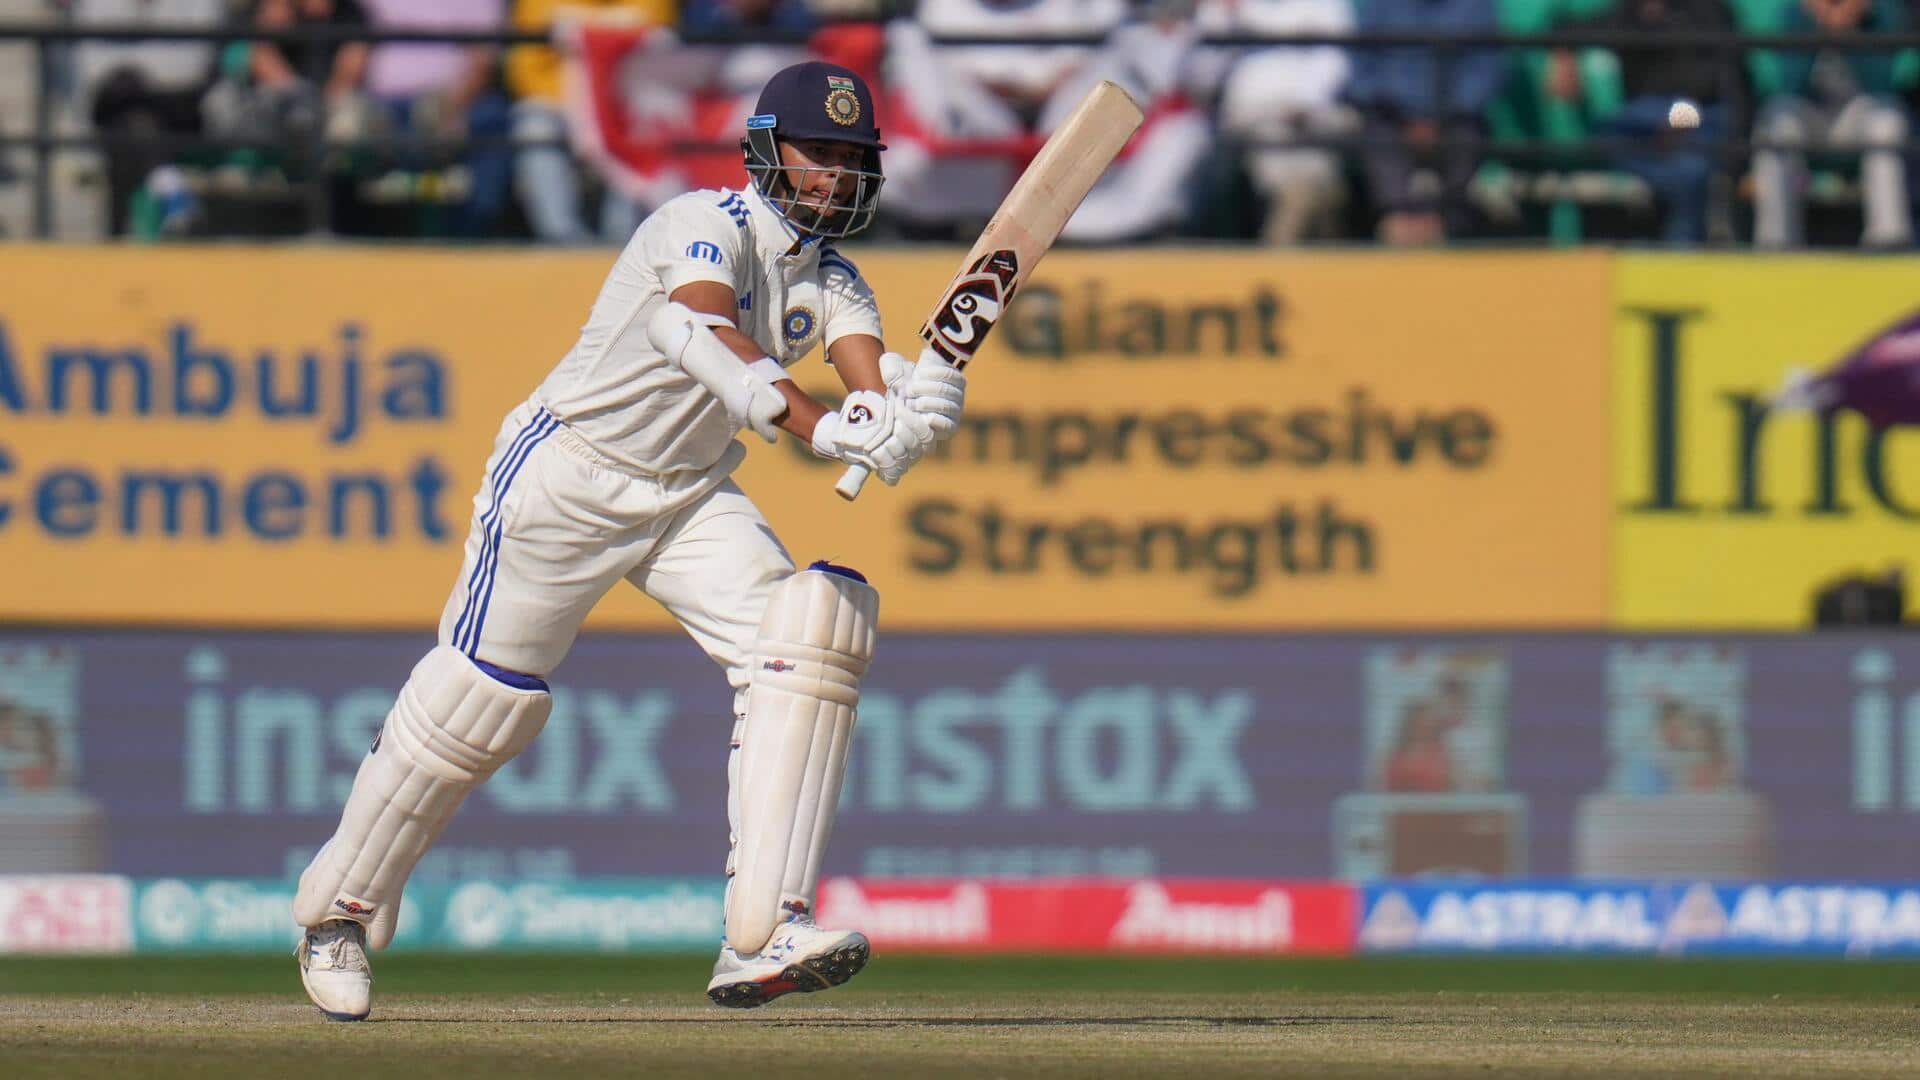 भारत बनाम इंग्लैंड: यशस्वी जायसवाल 1,000 टेस्ट रन पूरे करने वाले दूसरे सबसे तेज भारतीय बने